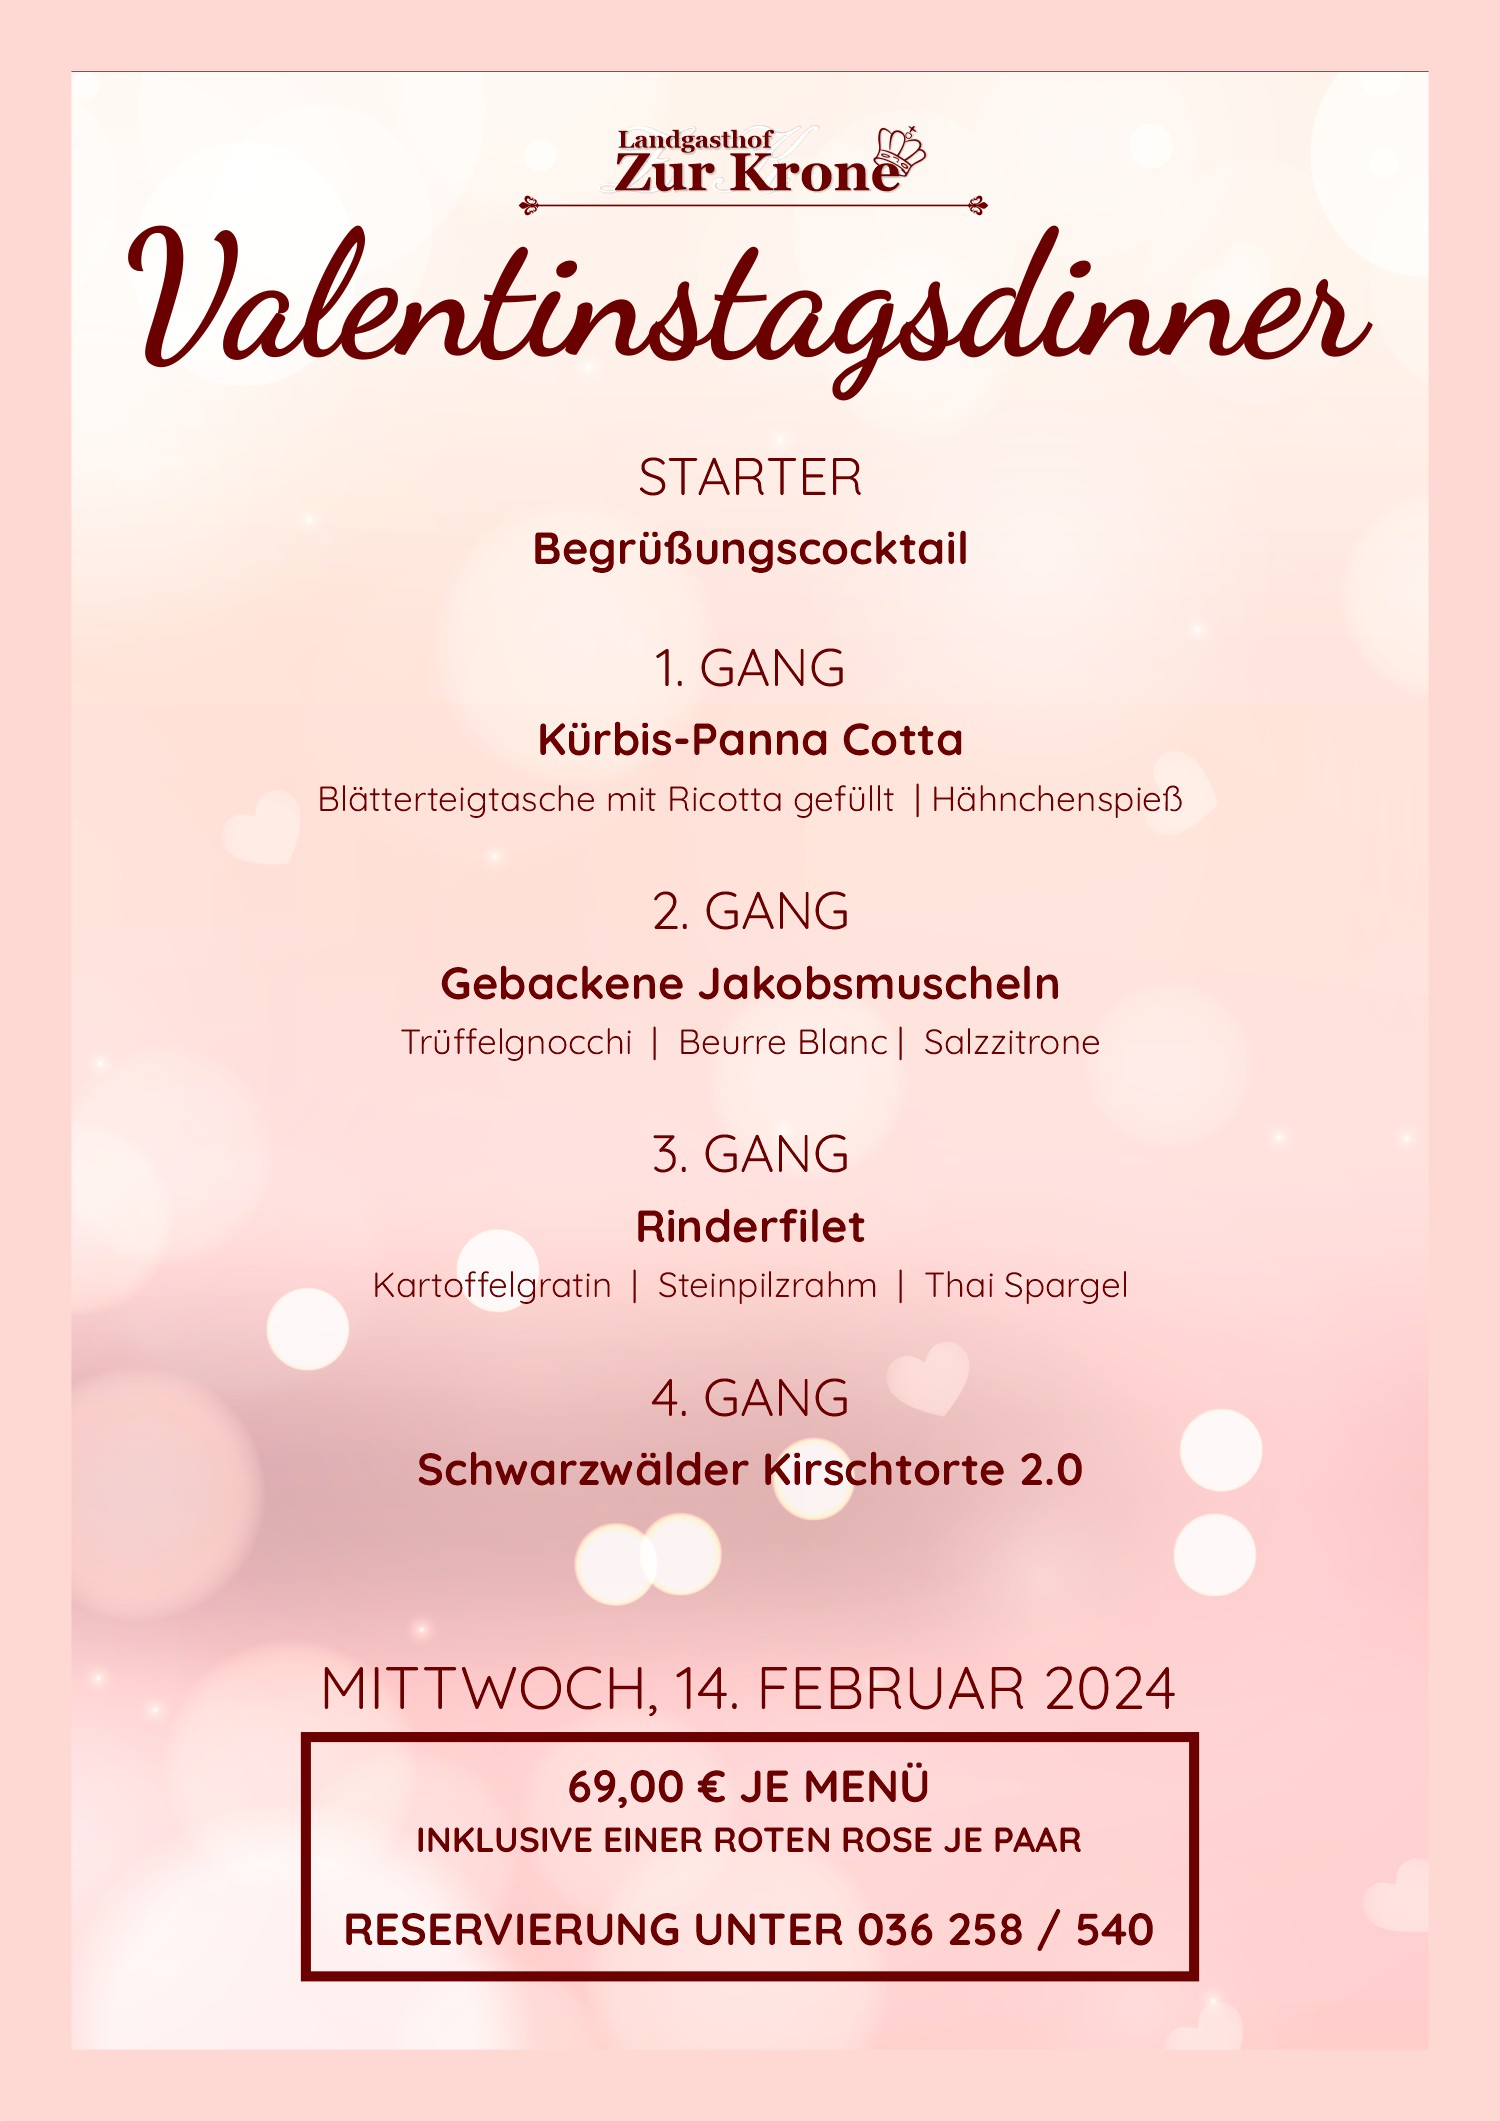 Valentinstag 2024 im Landgasthof Zur Krone